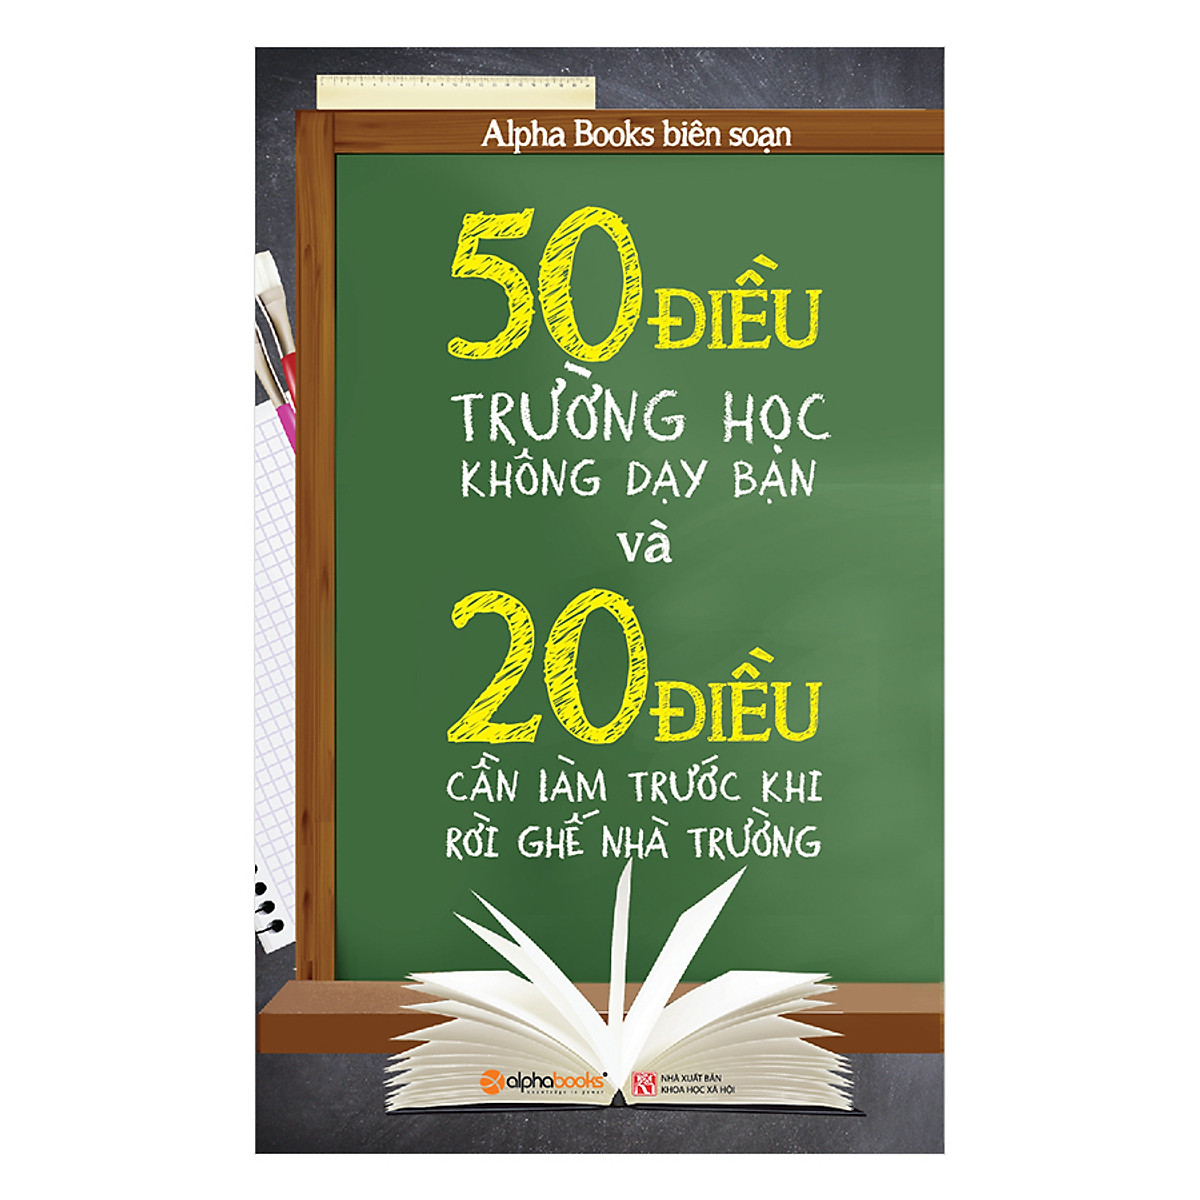 50 Điều Trường Học Không Dạy Bạn Và 20 Điều Cần Làm Trước Khi Rời Ghế Nhà Trường (Tái Bản) ebook PDF-EPUB-AWZ3-PRC-MOBI